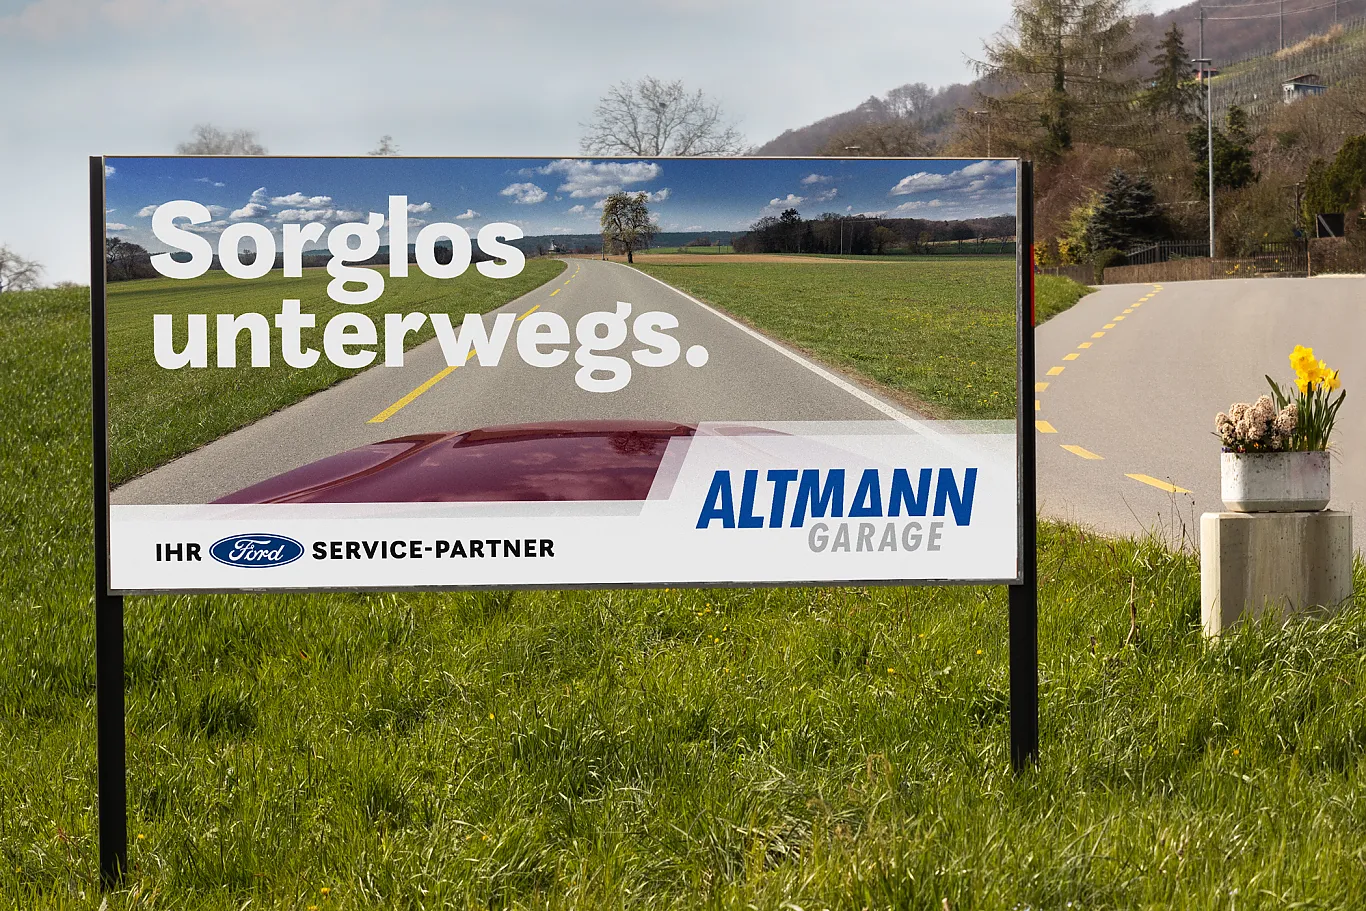 Altmann Garage . Werbung. Fotografie